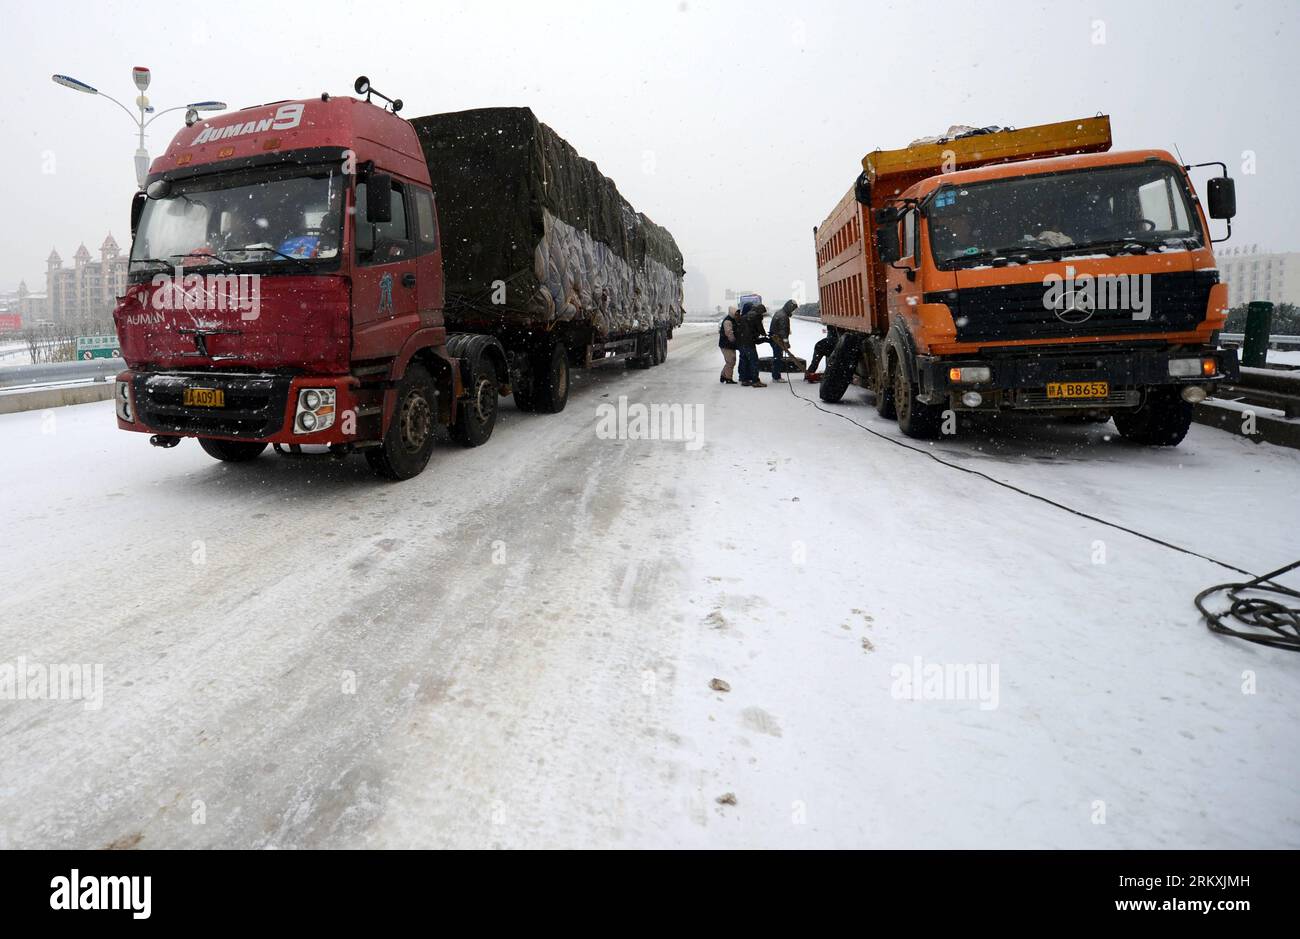 Bildnummer: 58963598 Datum: 04.01.2013 Copyright: imago/Xinhua (130104) -- NANCHANG, 4. Januar 2013 (Xinhua) -- Fahrzeuge fahren langsam auf einer eisigen Straße in Nanchang, der Hauptstadt der ostchinesischen Provinz Jiangxi, 4. Januar 2013. Die meisten Autobahnen in Jiangxi waren gefroren und einige waren aufgrund des starken Schnees seit Donnerstagabend blockiert. Die Wetterbeobachtungsstelle der Provinz gab am Freitag einen orangen Alarm auf der eisigen Straße aus. (Xinhua/Zhou Ke) (zz) CHINA-JIANGXI-NANCHANG-ICE ROAD (CN) PUBLICATIONXNOTXINXCHN Gesellschaft Wetter Jahreszeit Winter Schnee Eis kalt Kälte Verkehr Strassenverkehr x0x xmb 2013 quer 58963598 Stockfoto